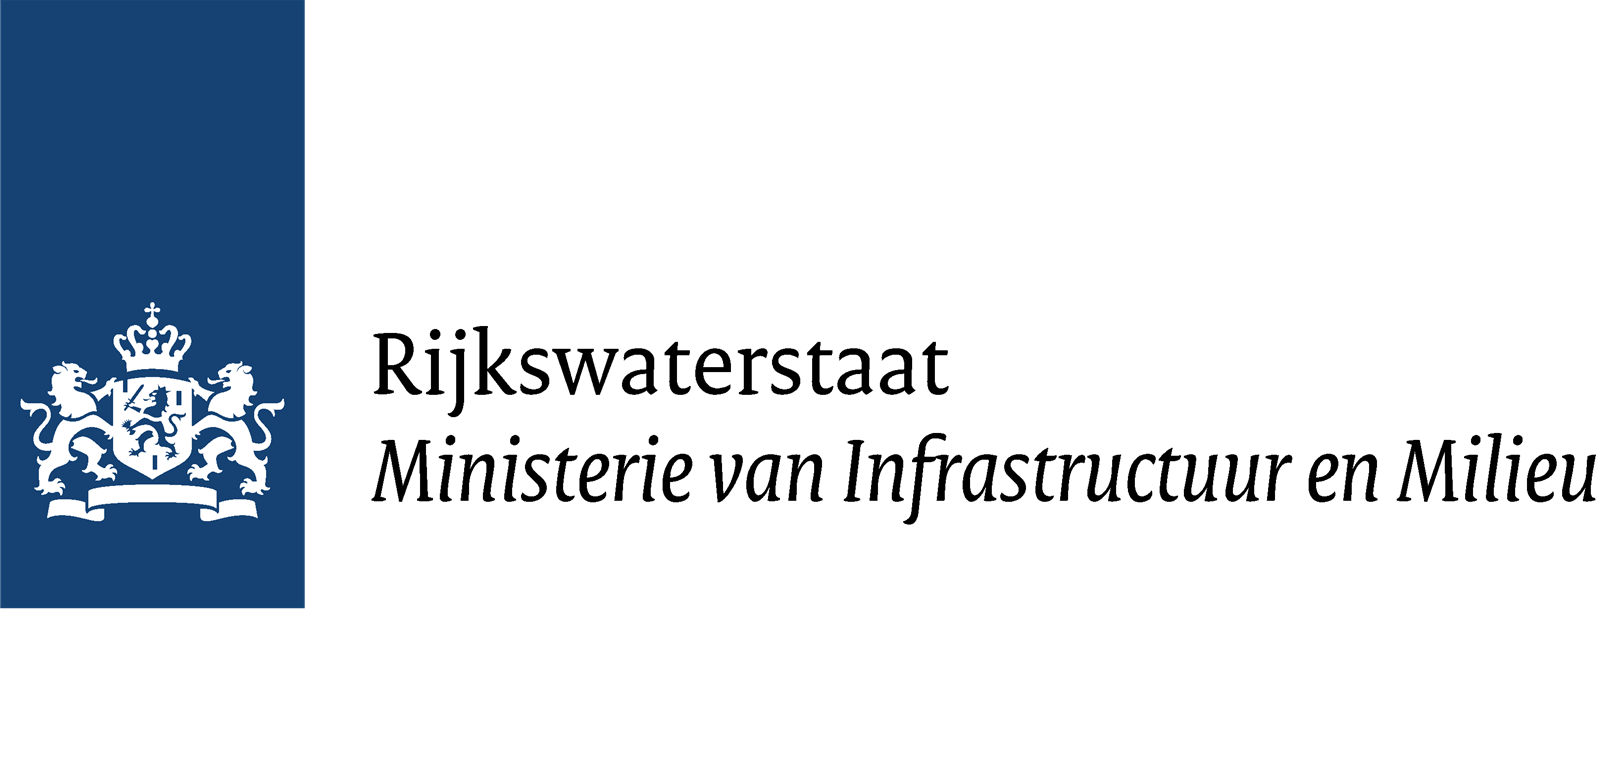 Rijkswaterstaat-logo-2.png